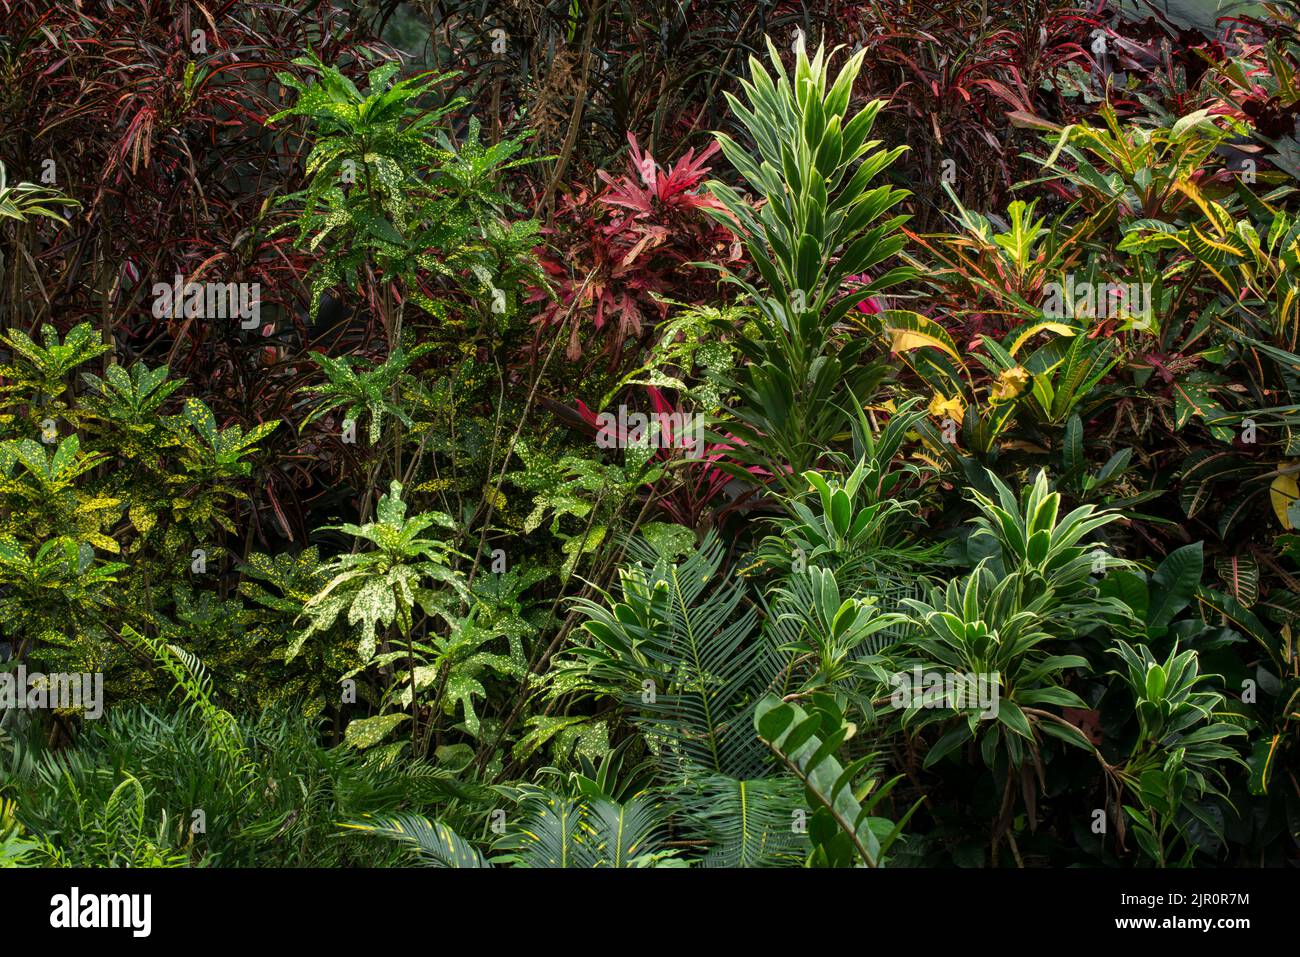 Plantes et arbres poussant dans une serre tropicale - photo de stock Banque D'Images